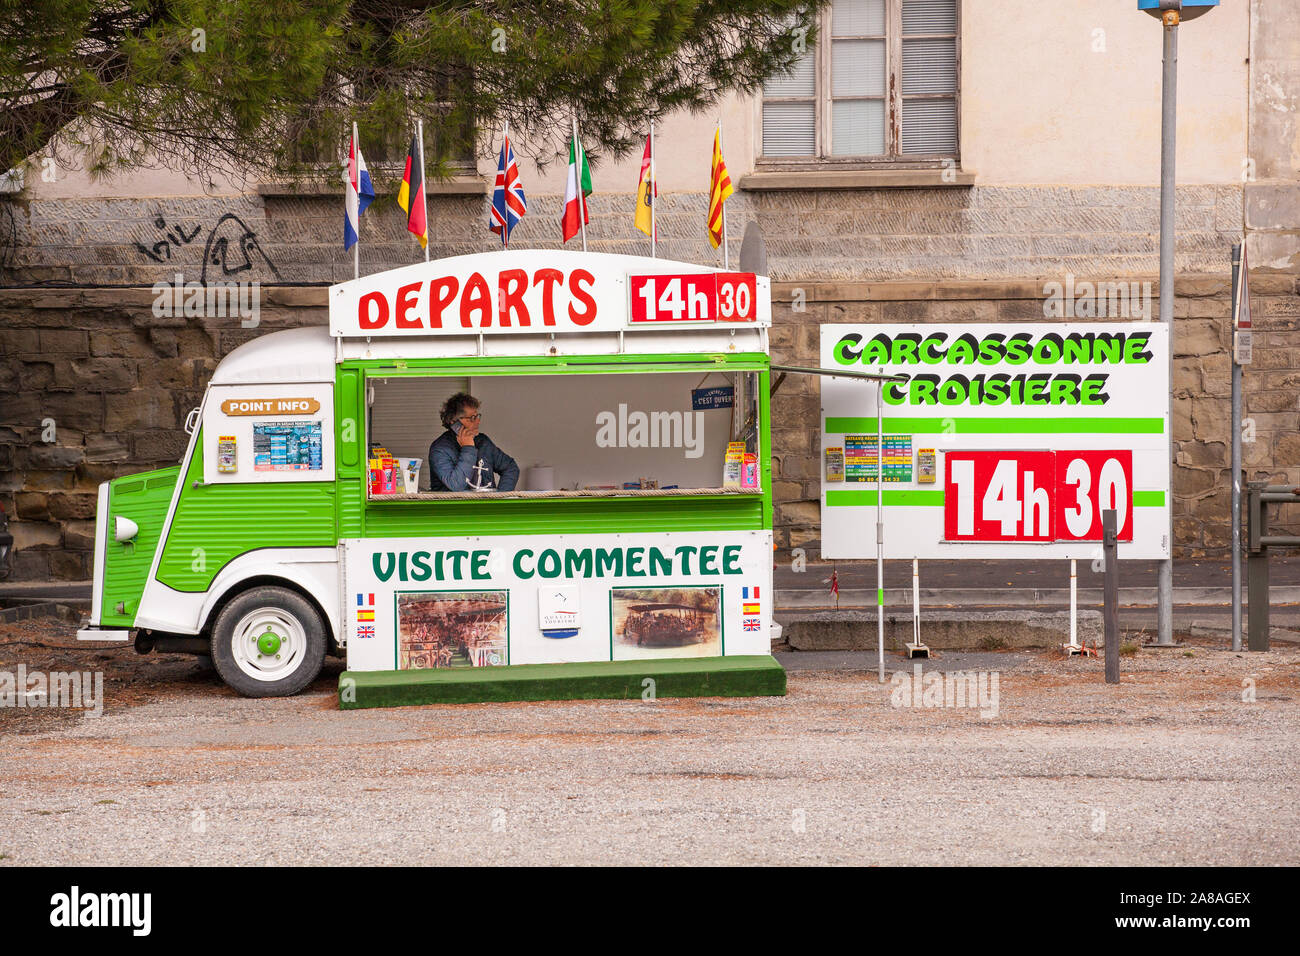 Vieille Citroen van converti à prendre les réservations pour des excursions sur le canal du Midi dans la ville française de Carcassonne France Banque D'Images